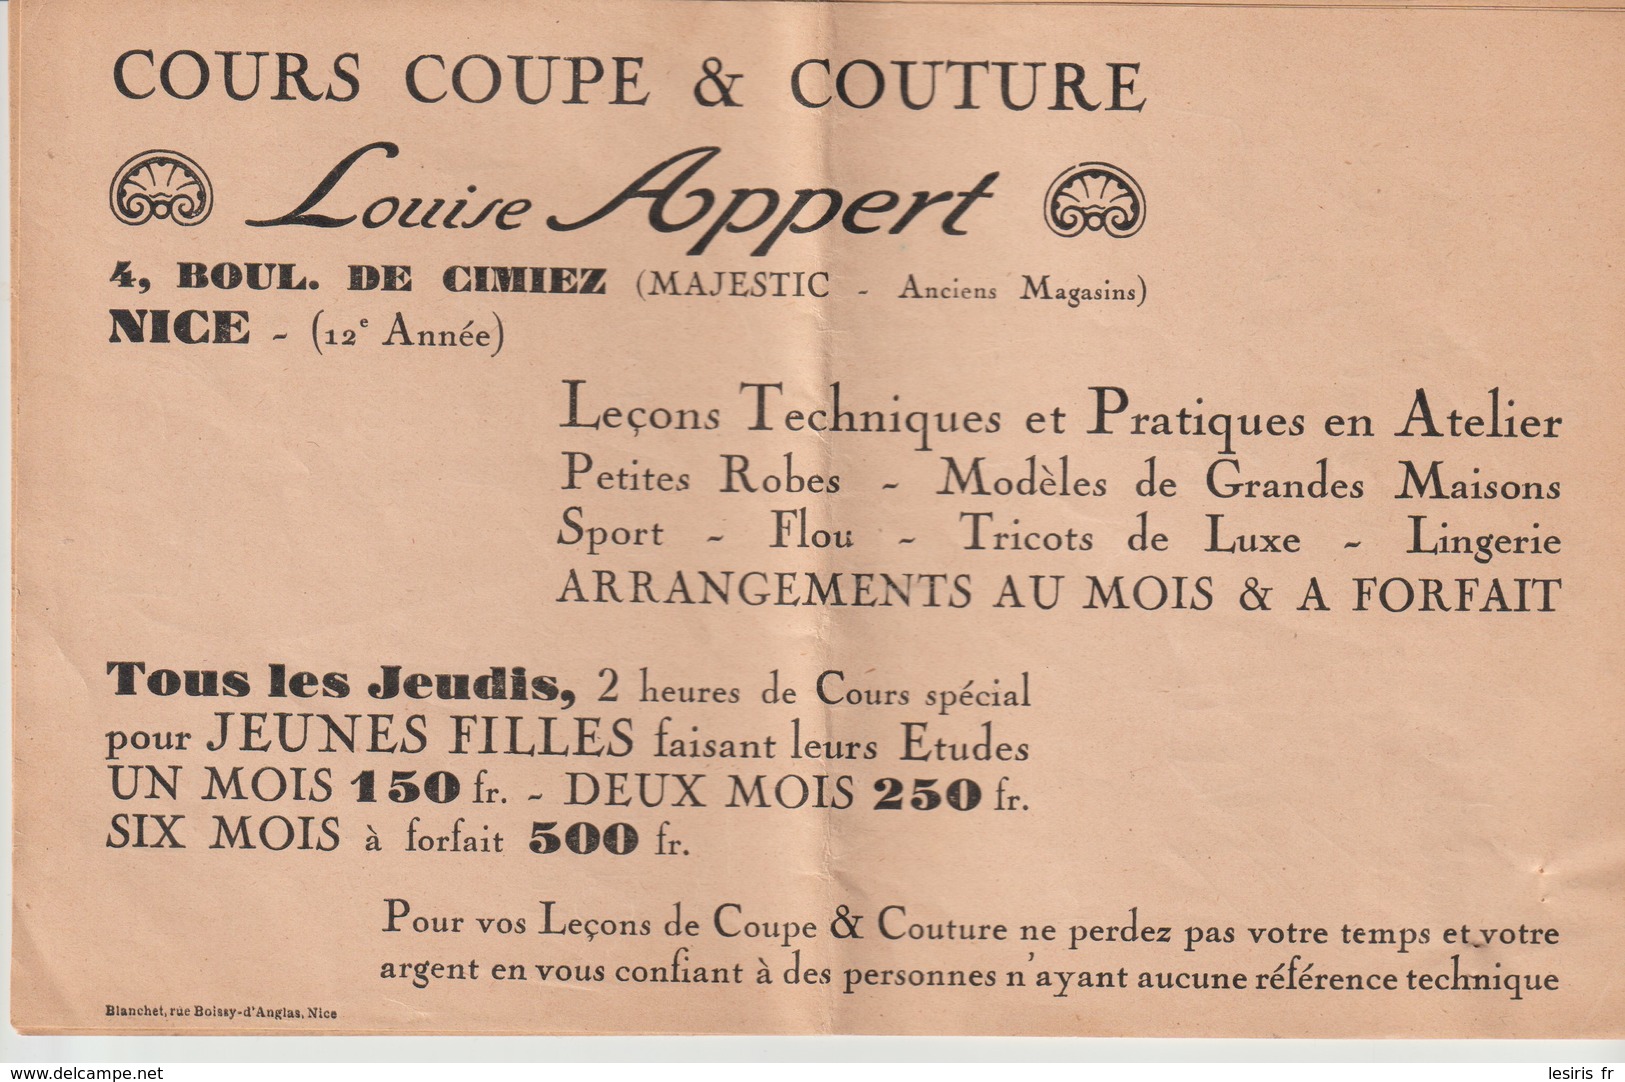 LOUISE APPERT - COURS COUPE & COUTURE - NICE - 4 Bd DE CIMIEZ - MAJESTIC - BLANCHET - 12° ANNEE - Publicités